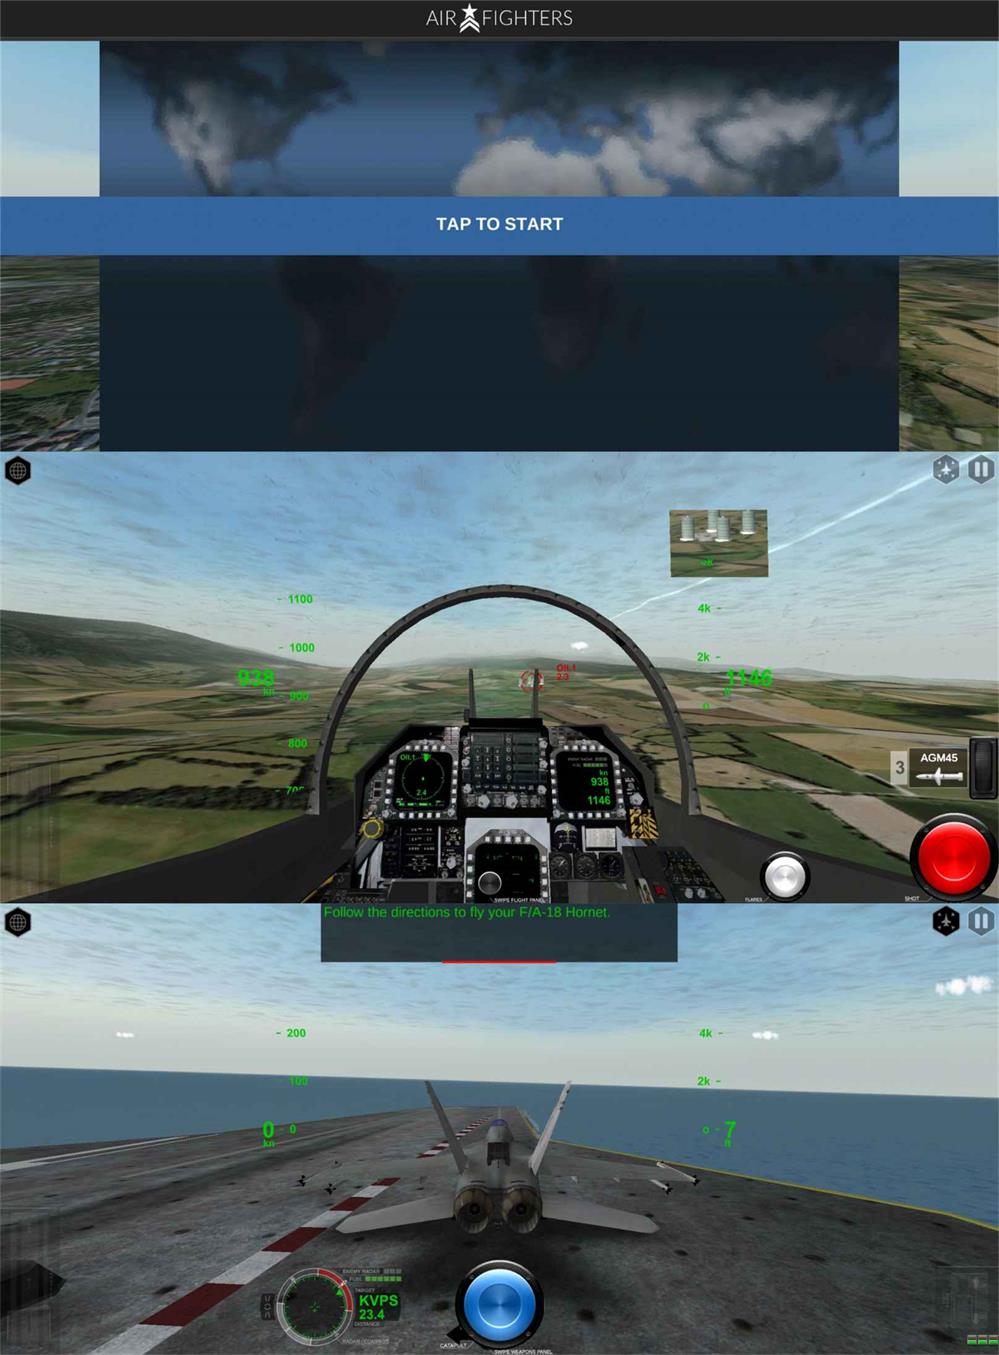 真实模拟飞行游戏 模拟空战-小灰兔技术频道